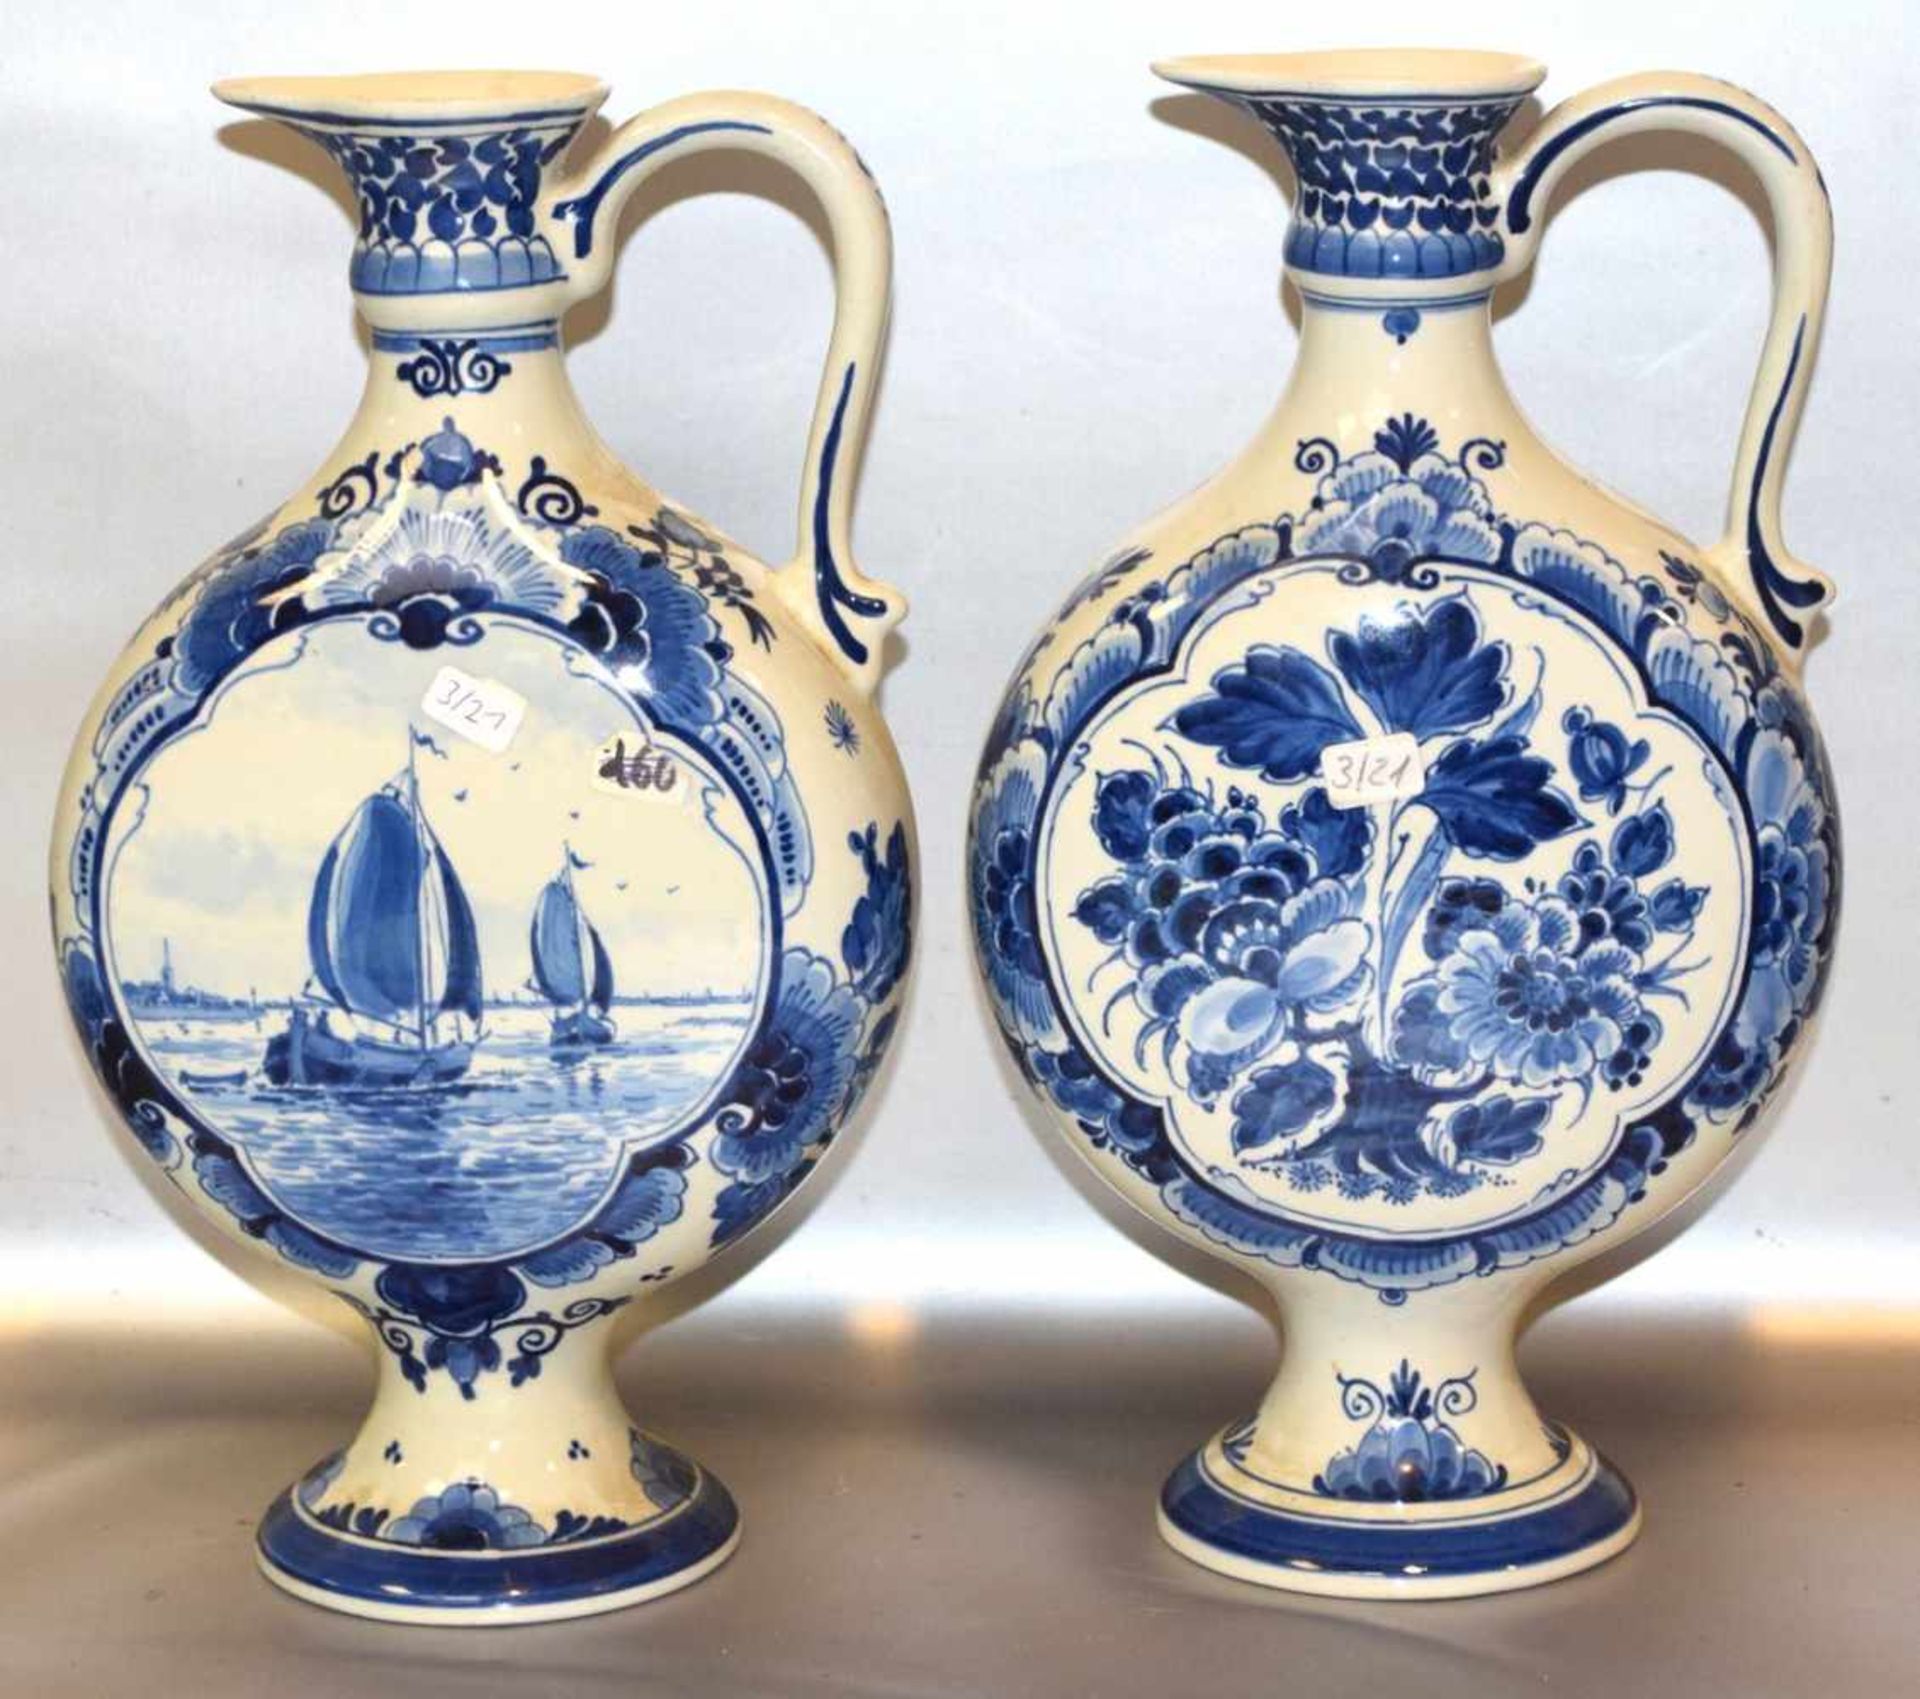 Zwei Vasenbeigefarben, runder Fuß, gebaucht, mit blauer Landschaft bzw. Blumenbemalung, H 29 cm,